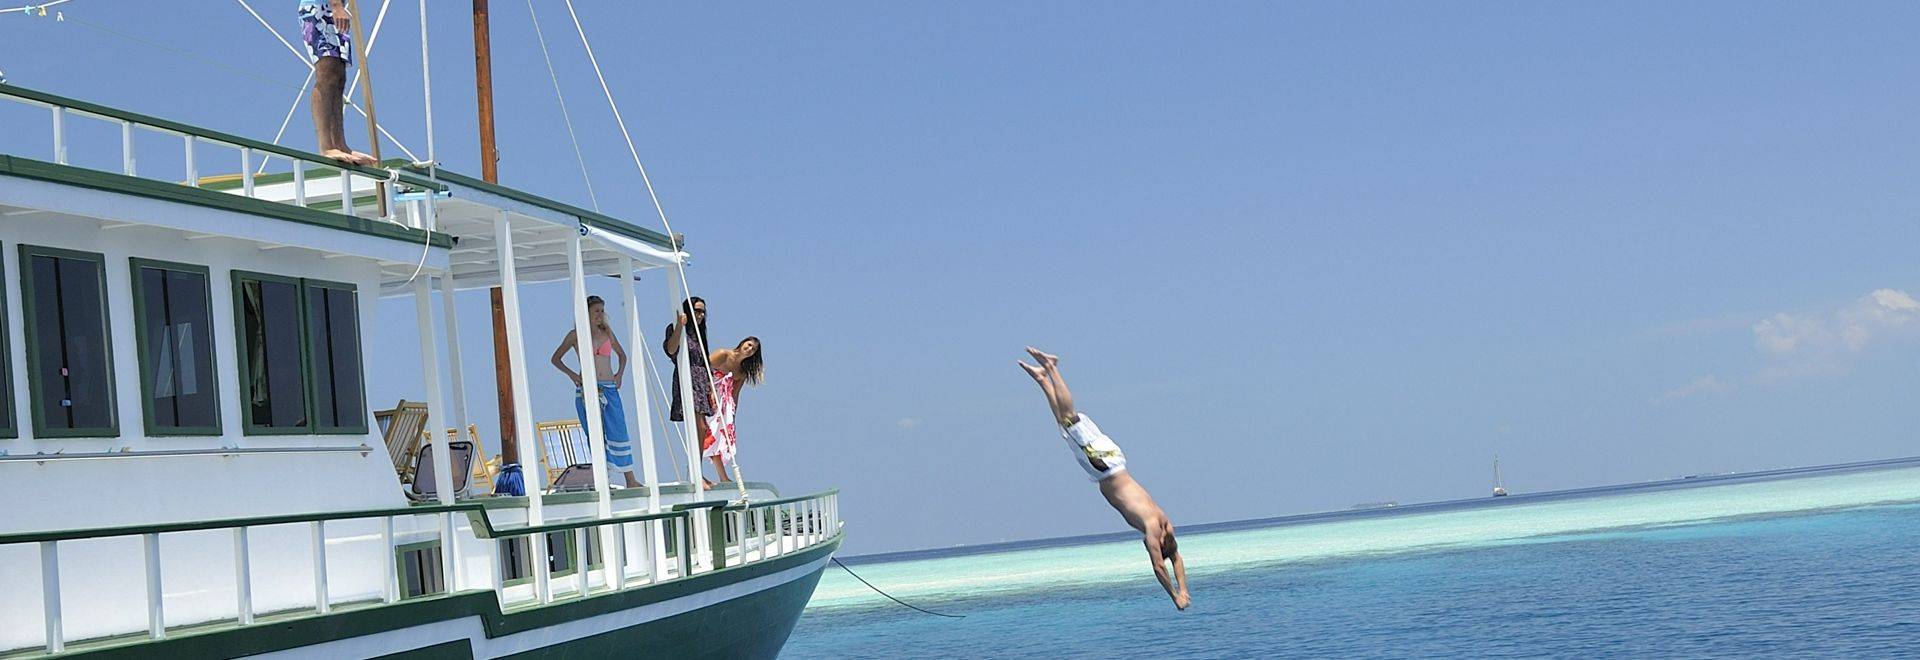 Maldives Sailing Boat Gahaa Diving Travellers-Voyage Maldives 2013-IMG1035 Lg RGB.jpg